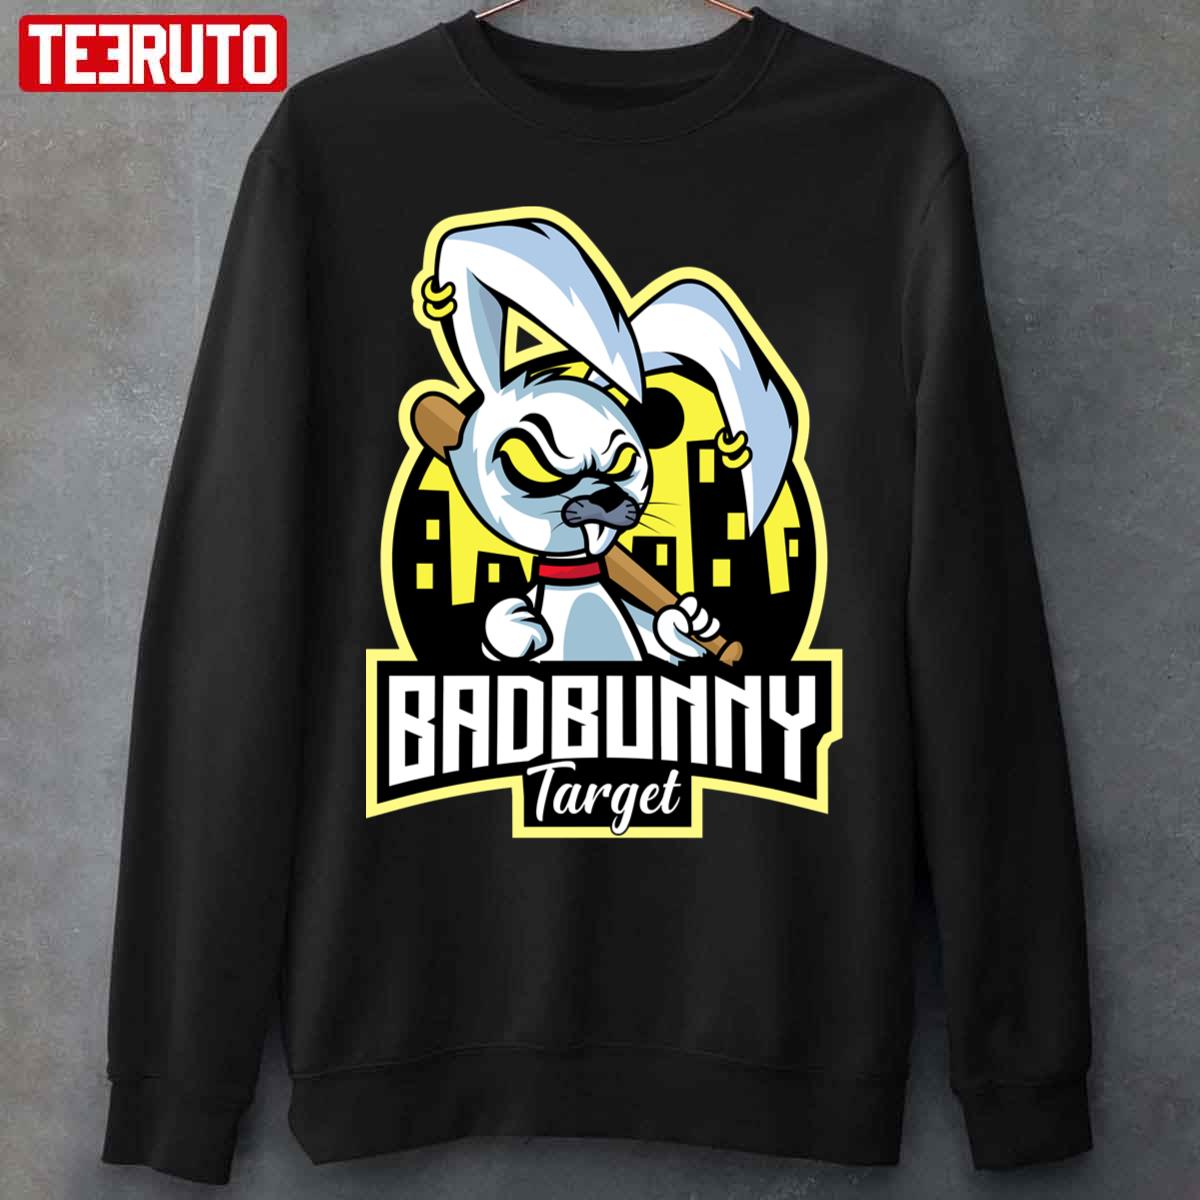 Bad Bunny Target Funny Unisex Sweatshirt